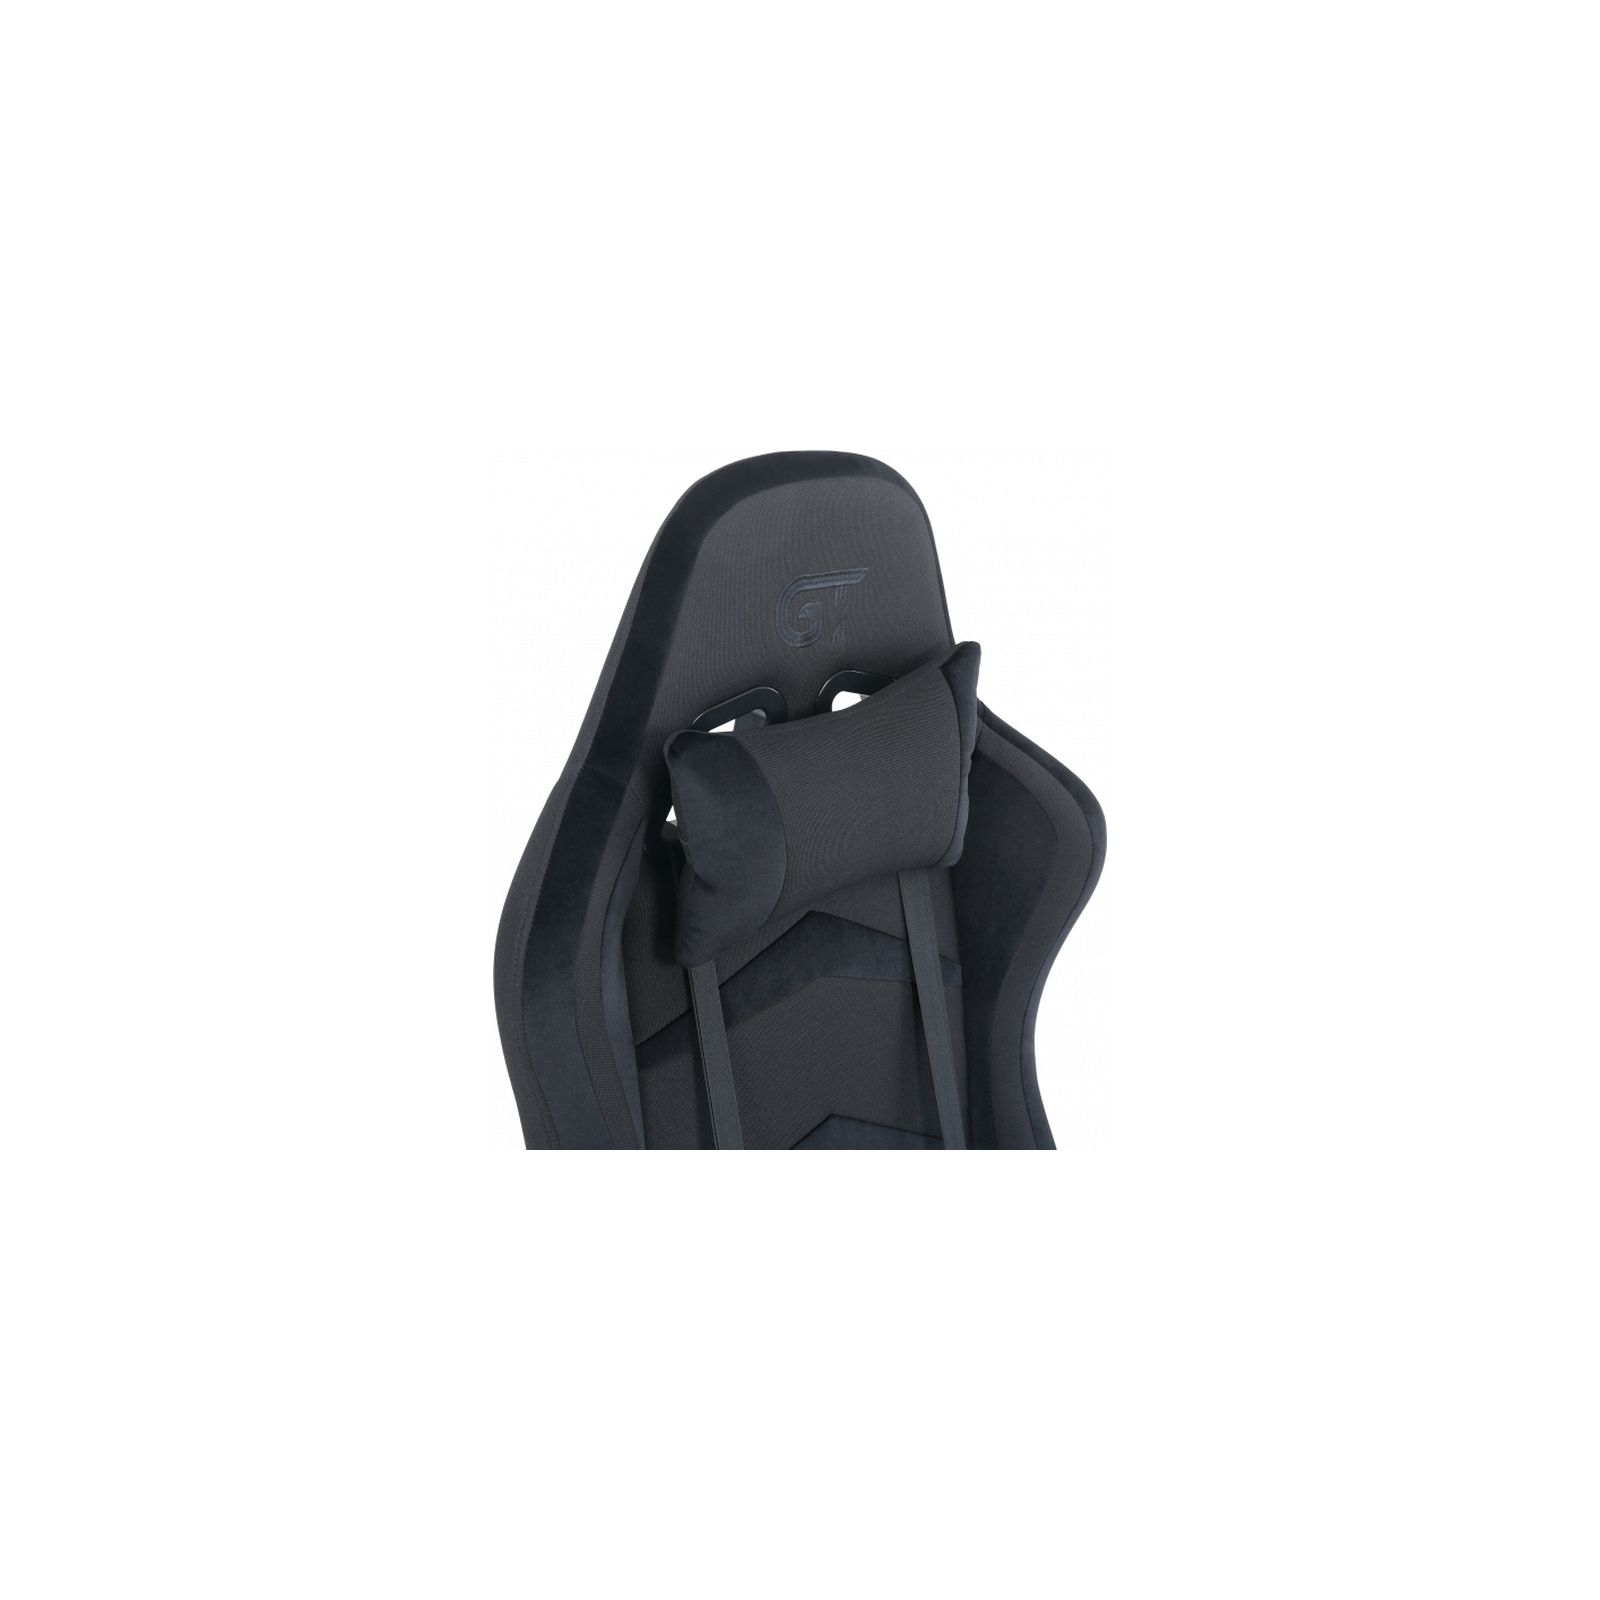 Кресло игровое GT Racer X-2534-F Gray/Black Suede (X-2534-F Fabric Gray/Black Suede) изображение 7